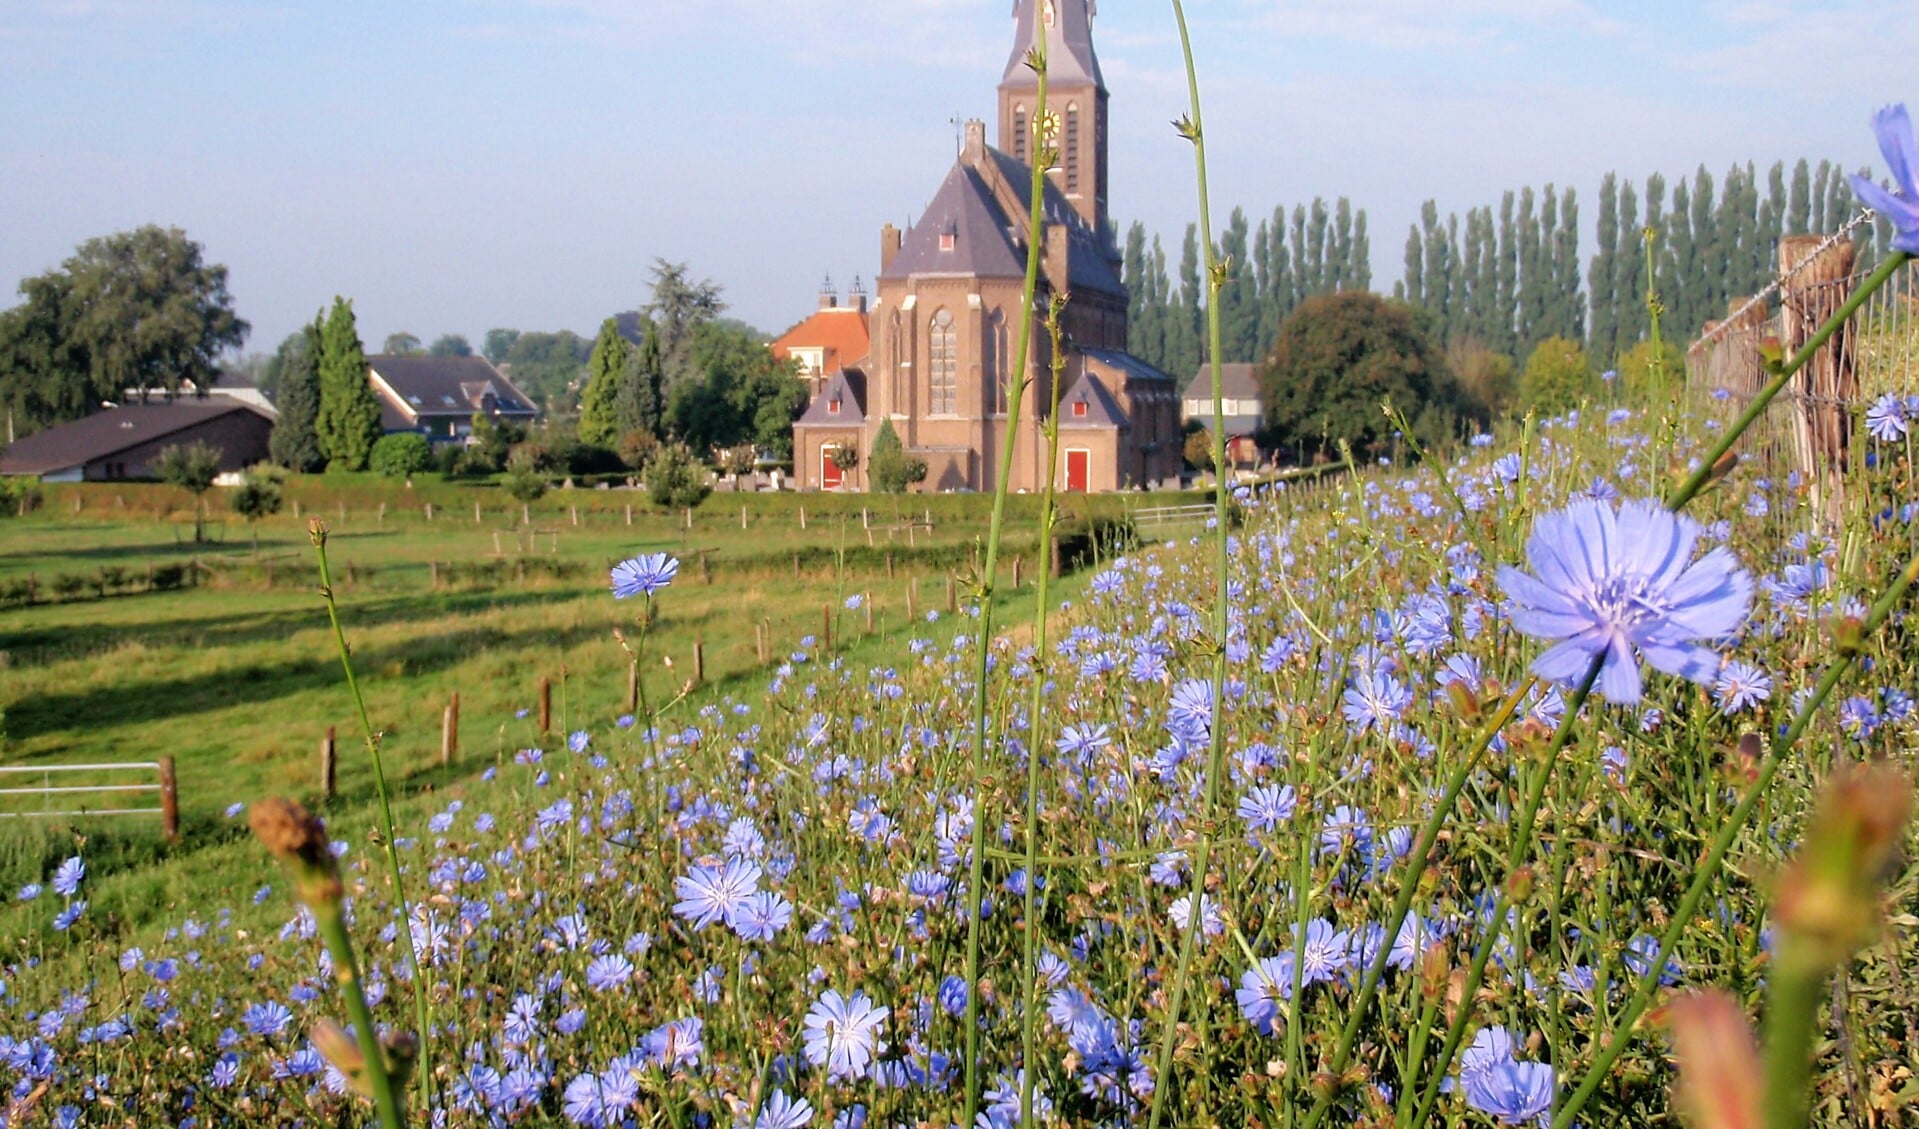 De kerk in Weurt.